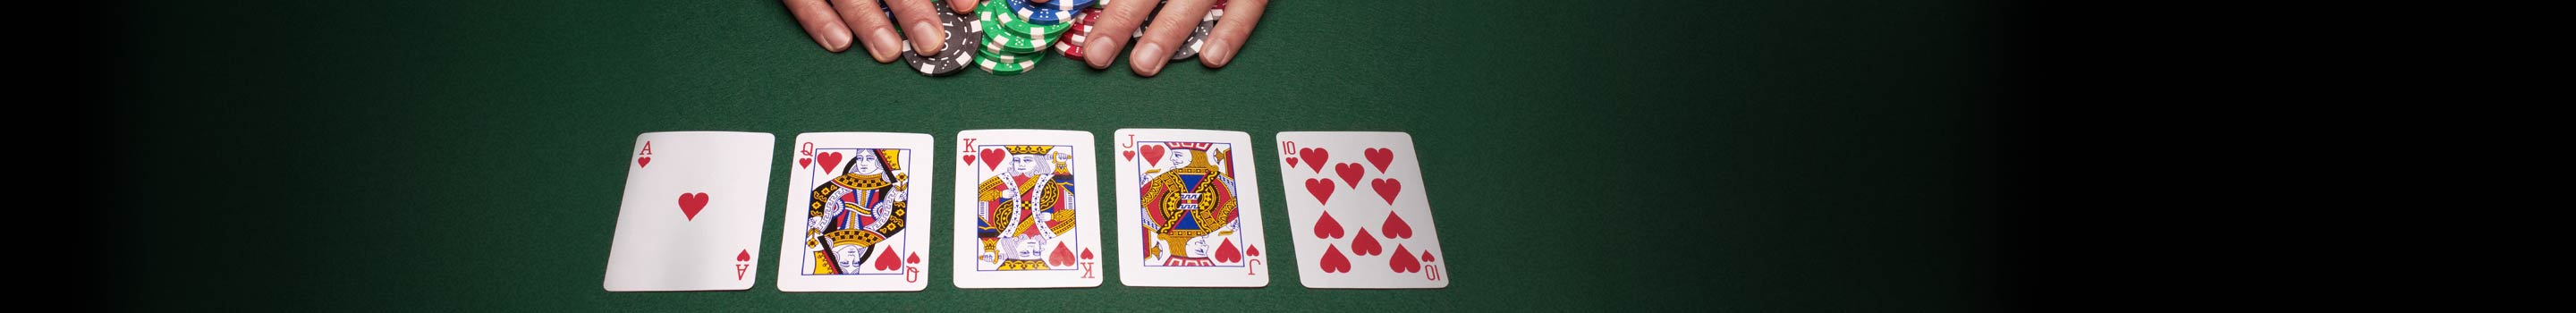 Kombinacije karata u pokeru